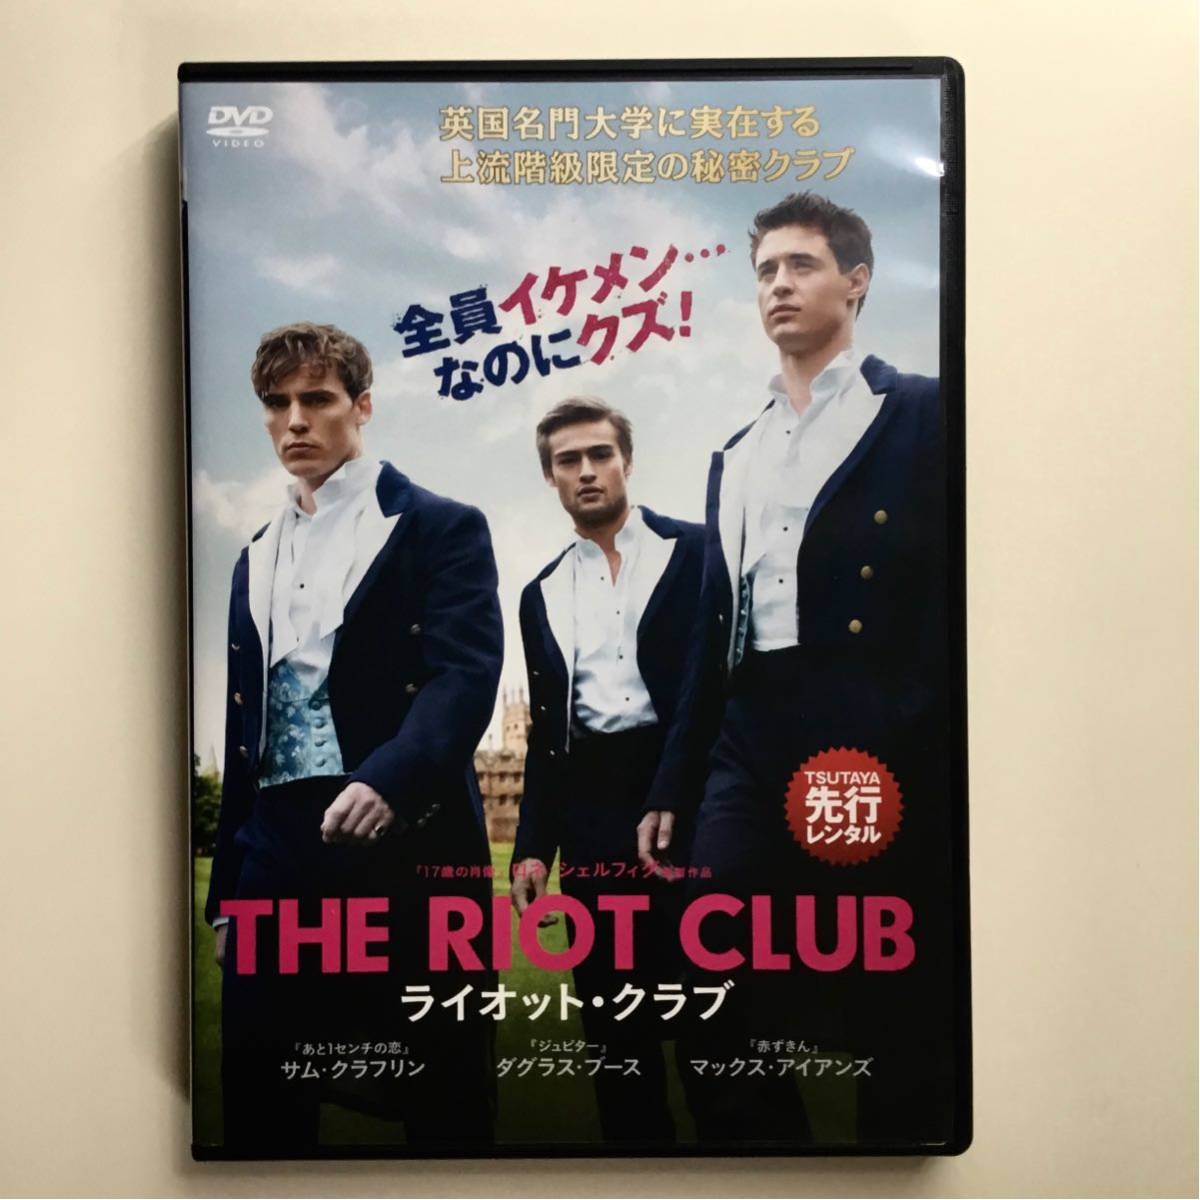 ライオット・クラブ DVD レンタル版 サム・クラフリン ダグラス・ブース